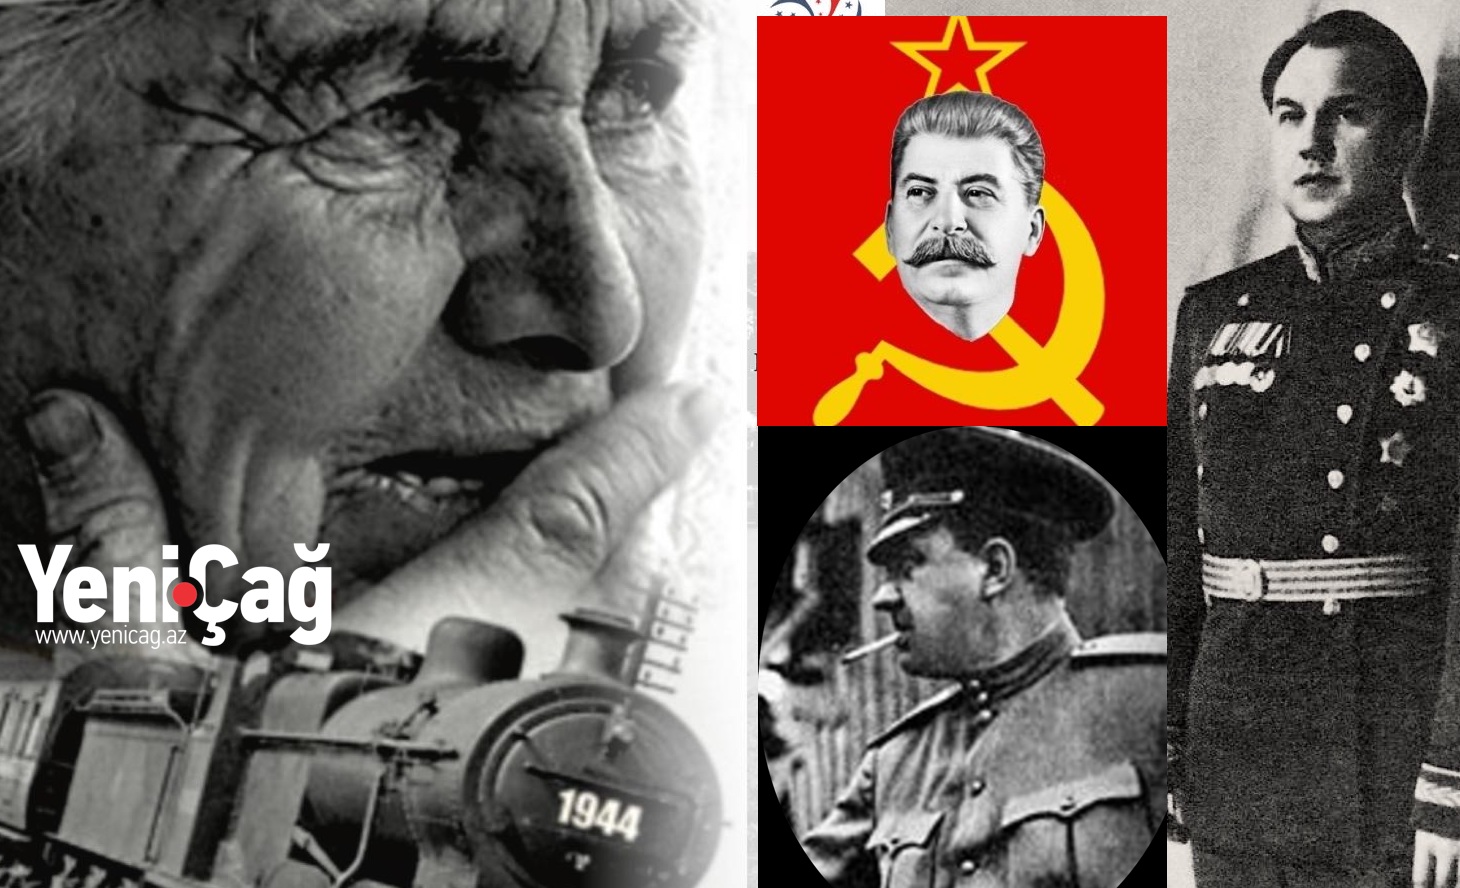 Stalinin çeçenləri suda boğub, axıskalıları ağzıbağlı vaqonlarda ac saxlayaraq öldürən mələküzlü cəlladı – Araşdırma